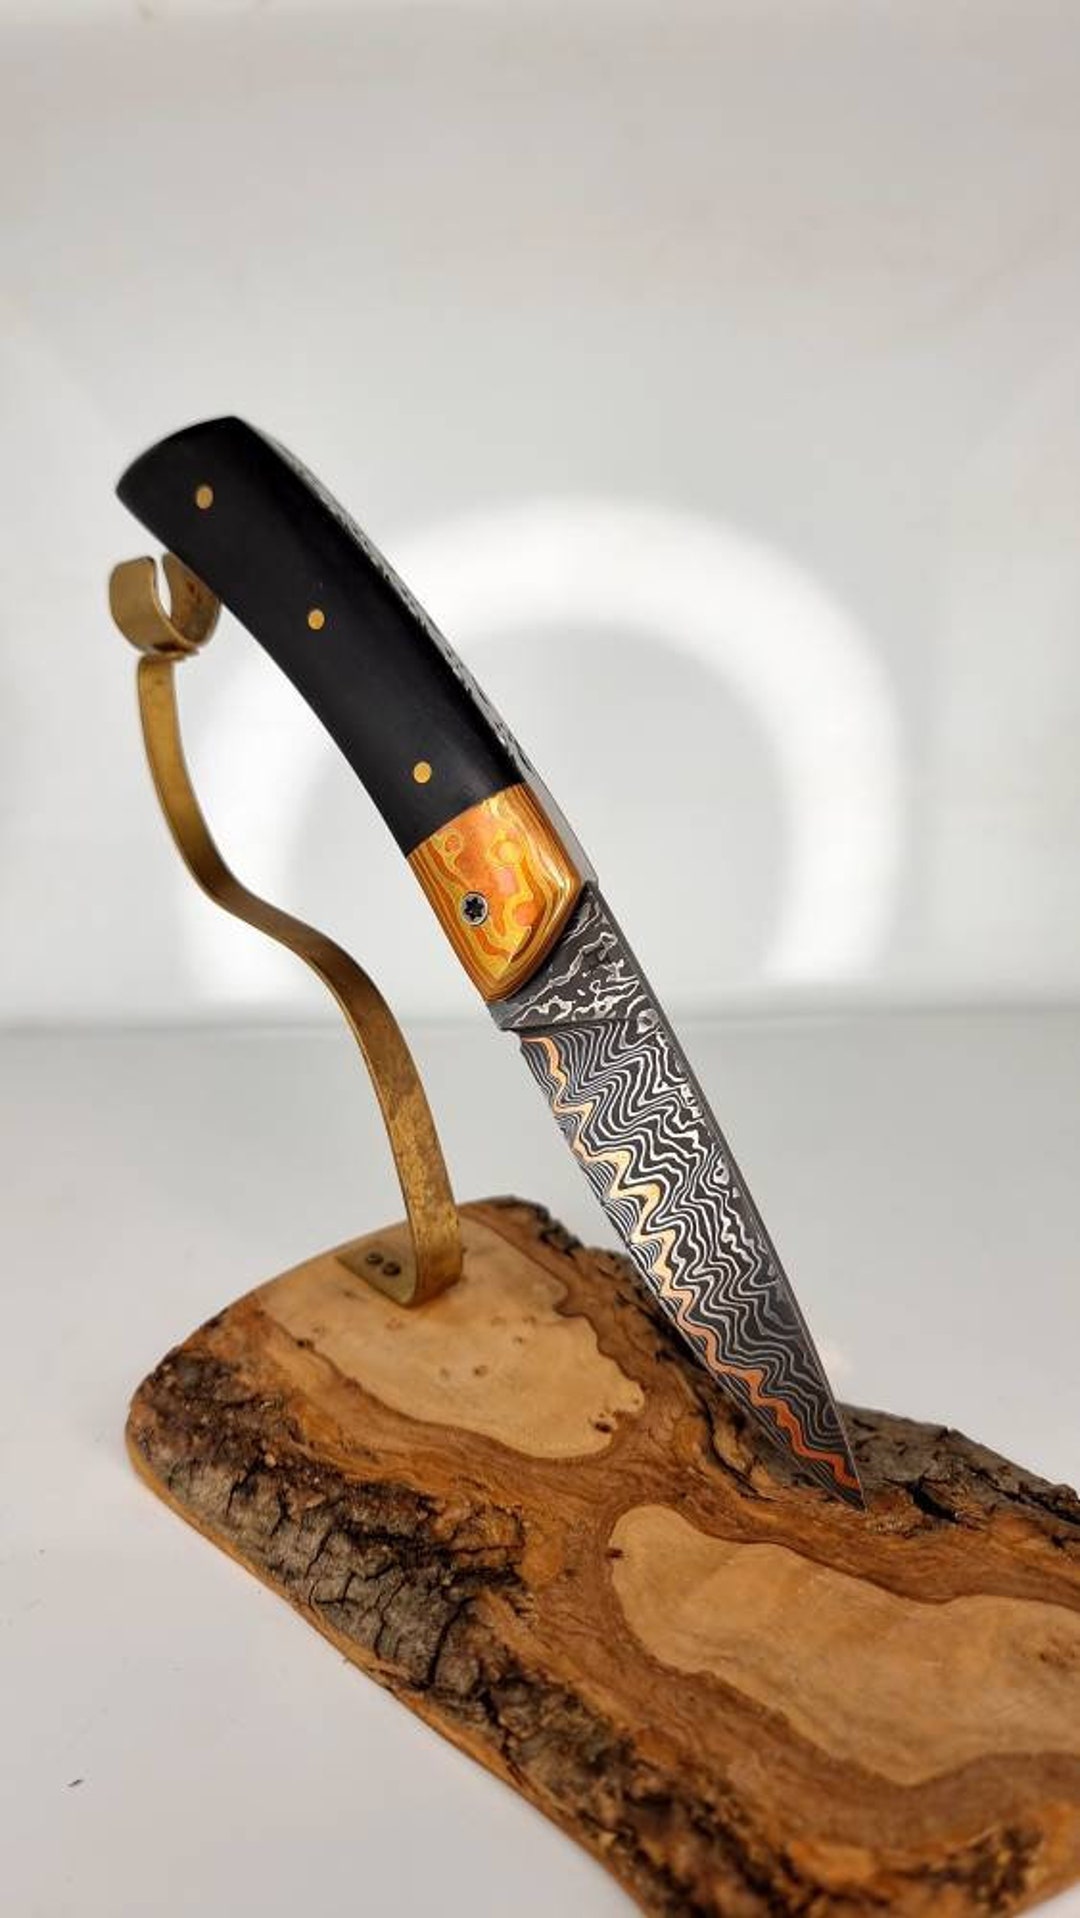 Couteau d'office 8 cm Acier japonais Damas AUS-10 manche Olive